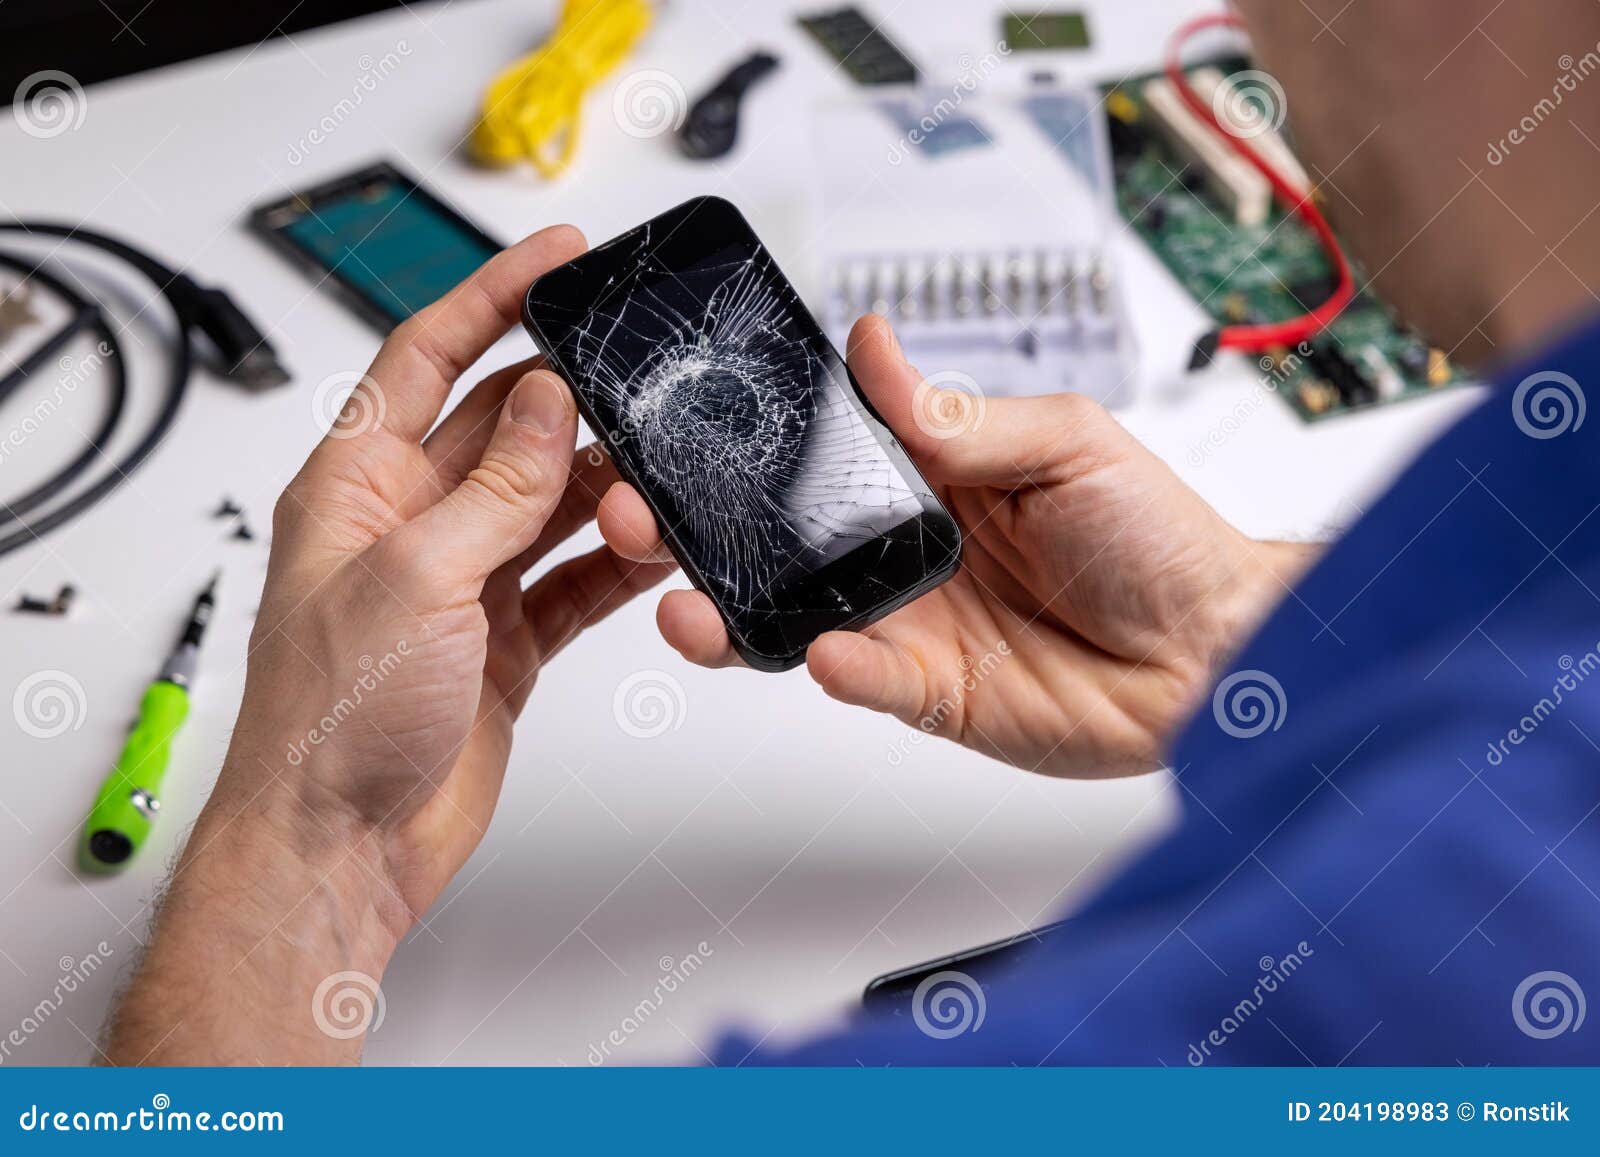 smartphone with broken cracked screen in technician hands. phone repair service